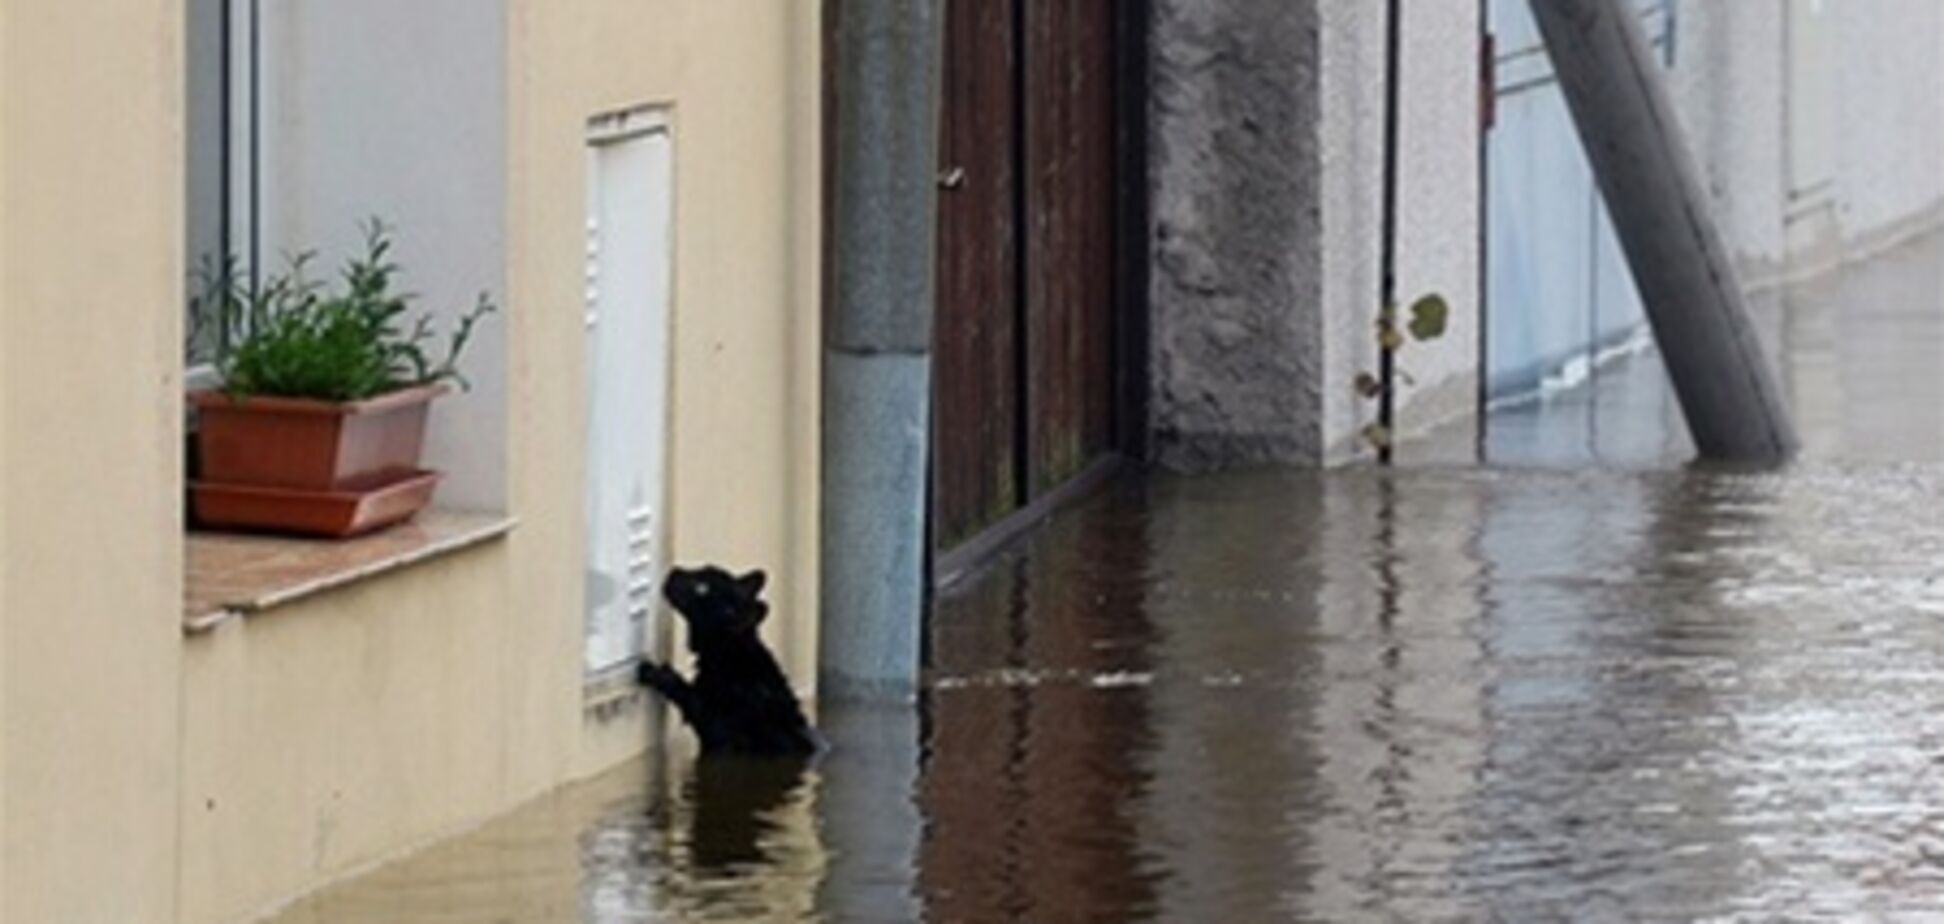 В Европе спасатели помогают животным при наводнении